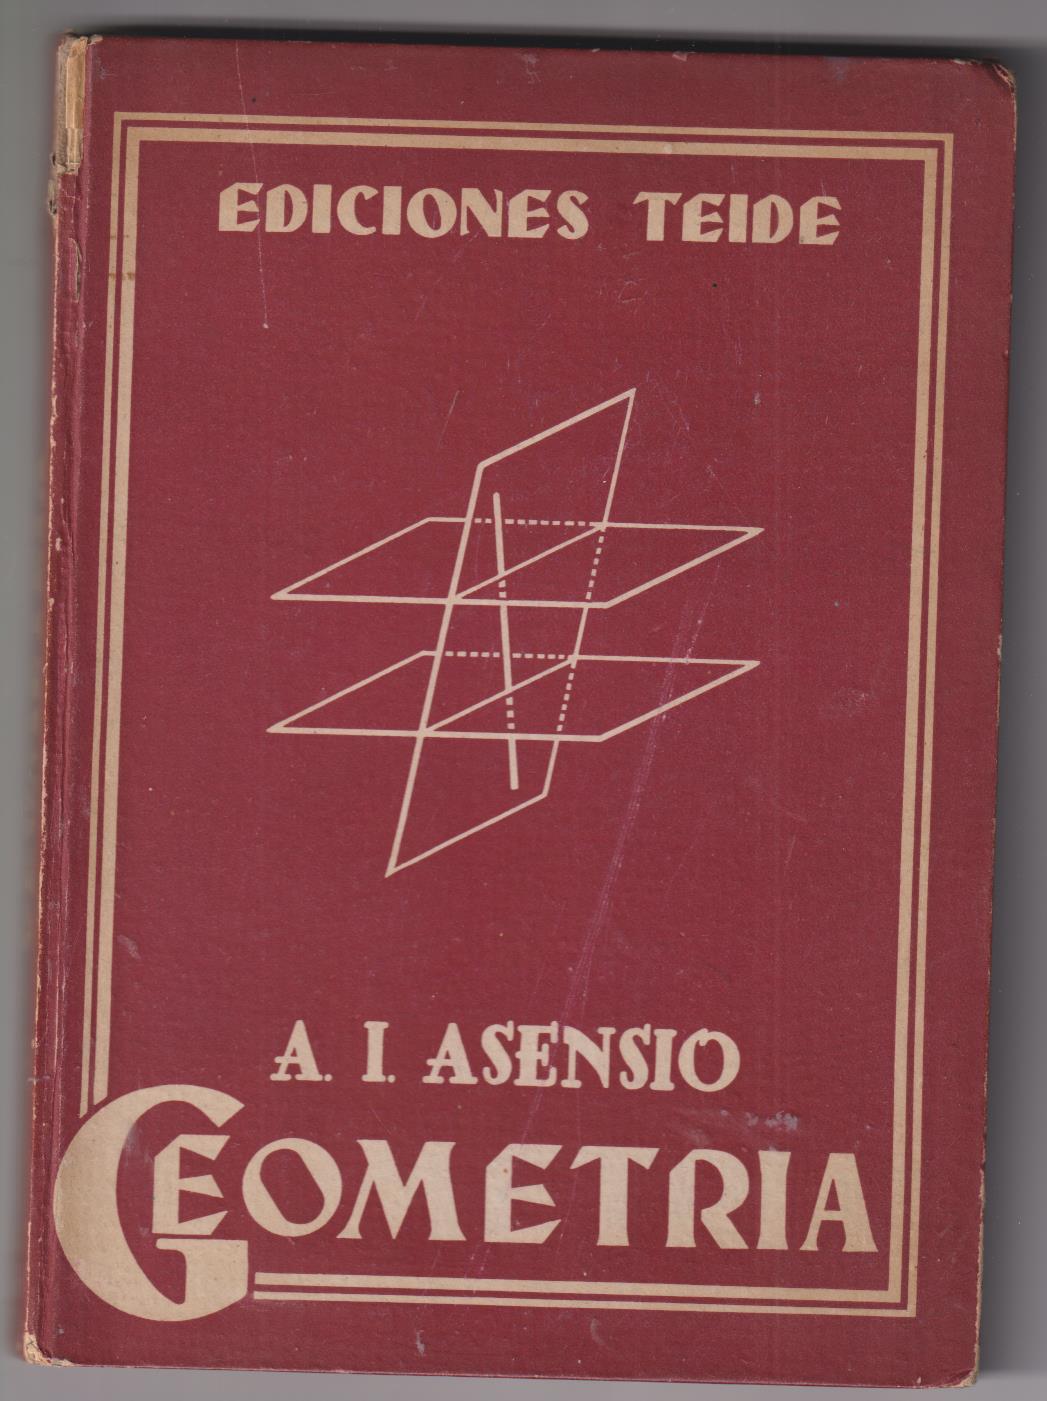 A. I. Asensio. Geometría. Ediciones Teide